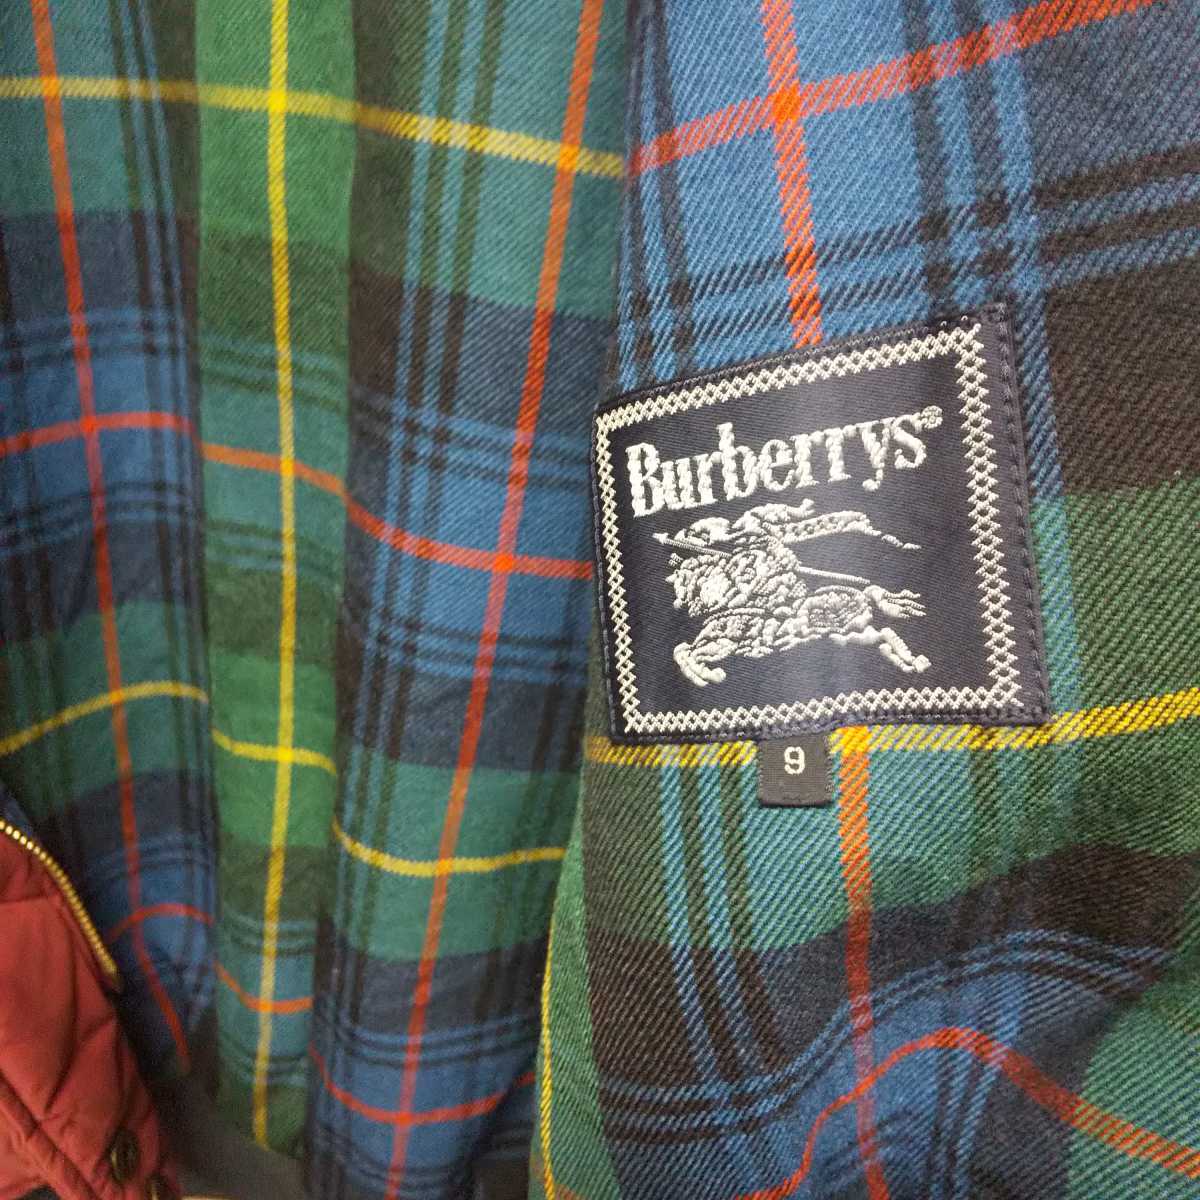 ヴィンテージ BURBERRYS / バーバリー プローサム キルティング ジャケット 90s vintage ヴィンテージ 中綿 ダウン 古着  burberry